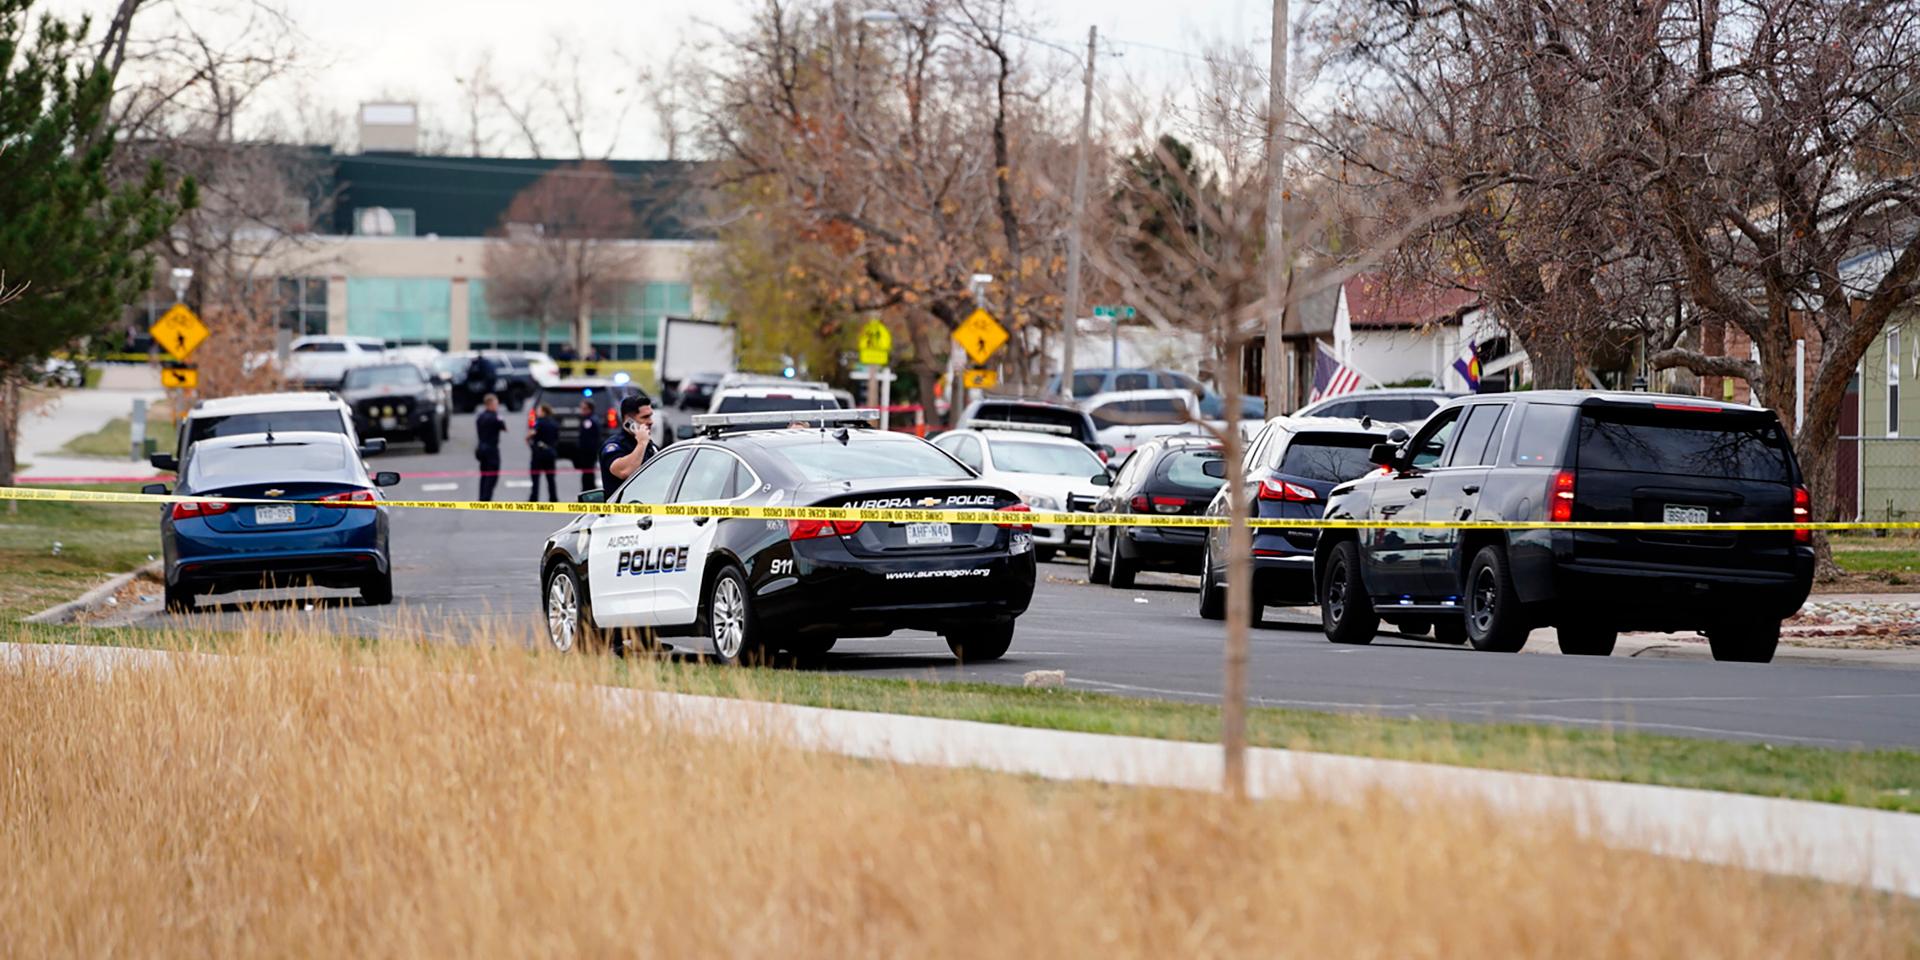 Sex elever sköts i närheten av en gymnasieskola vid lunchtid på måndagen, lokal tid.